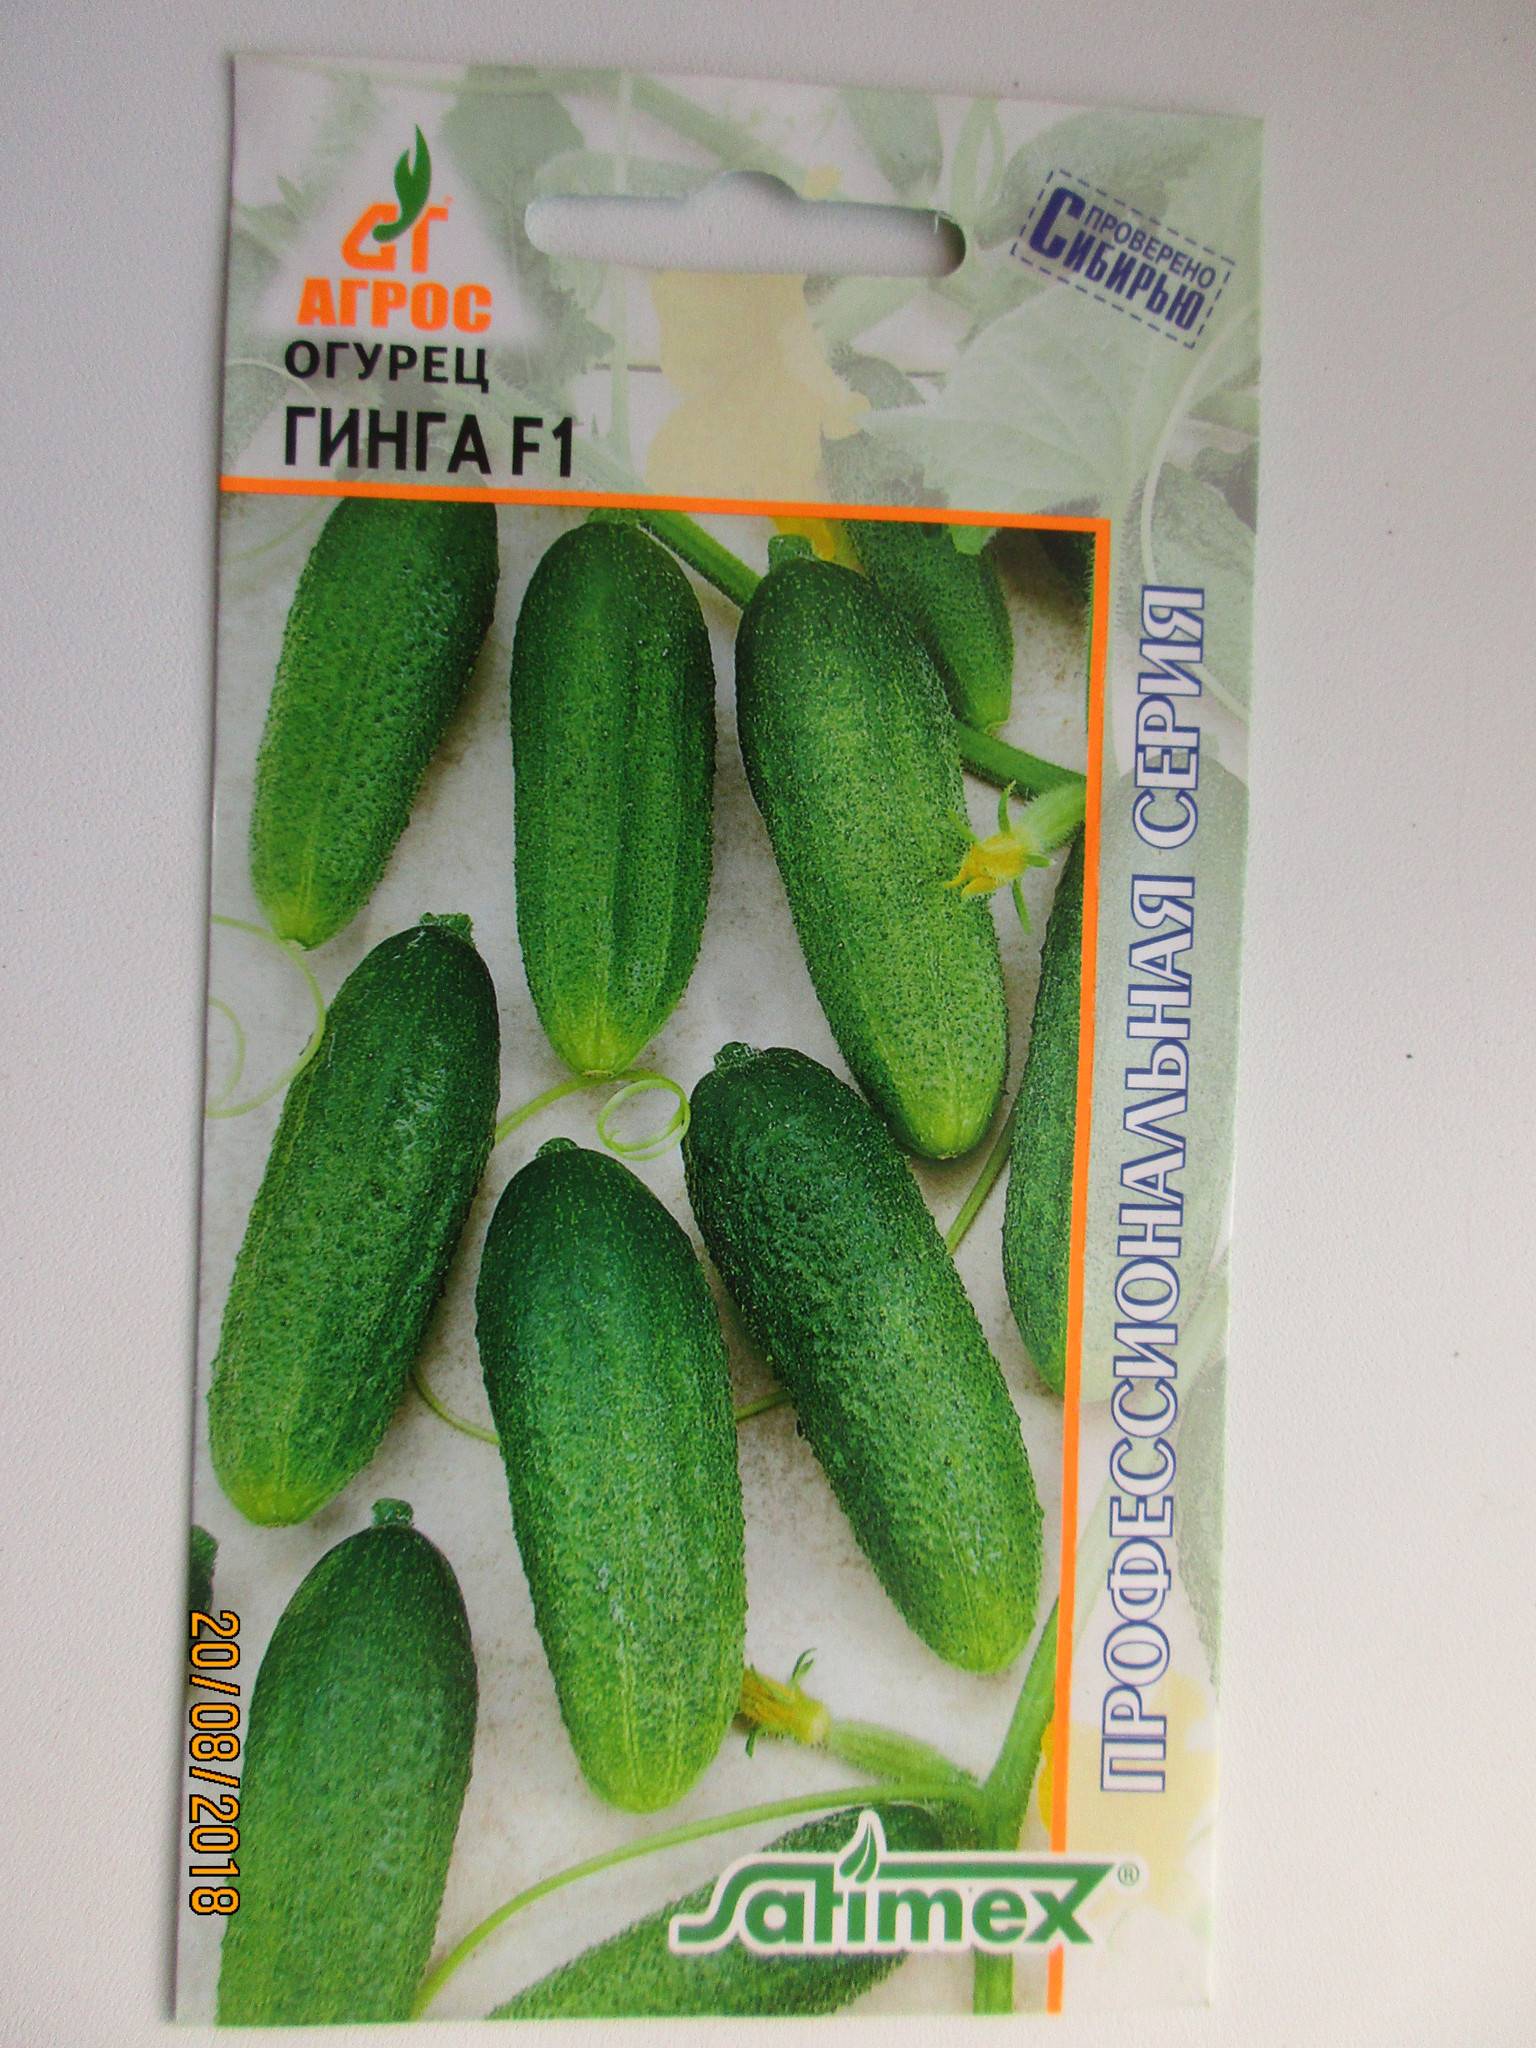 Огурец гинга f1 – высокоурожайный гибрид с отличным вкусом плодов